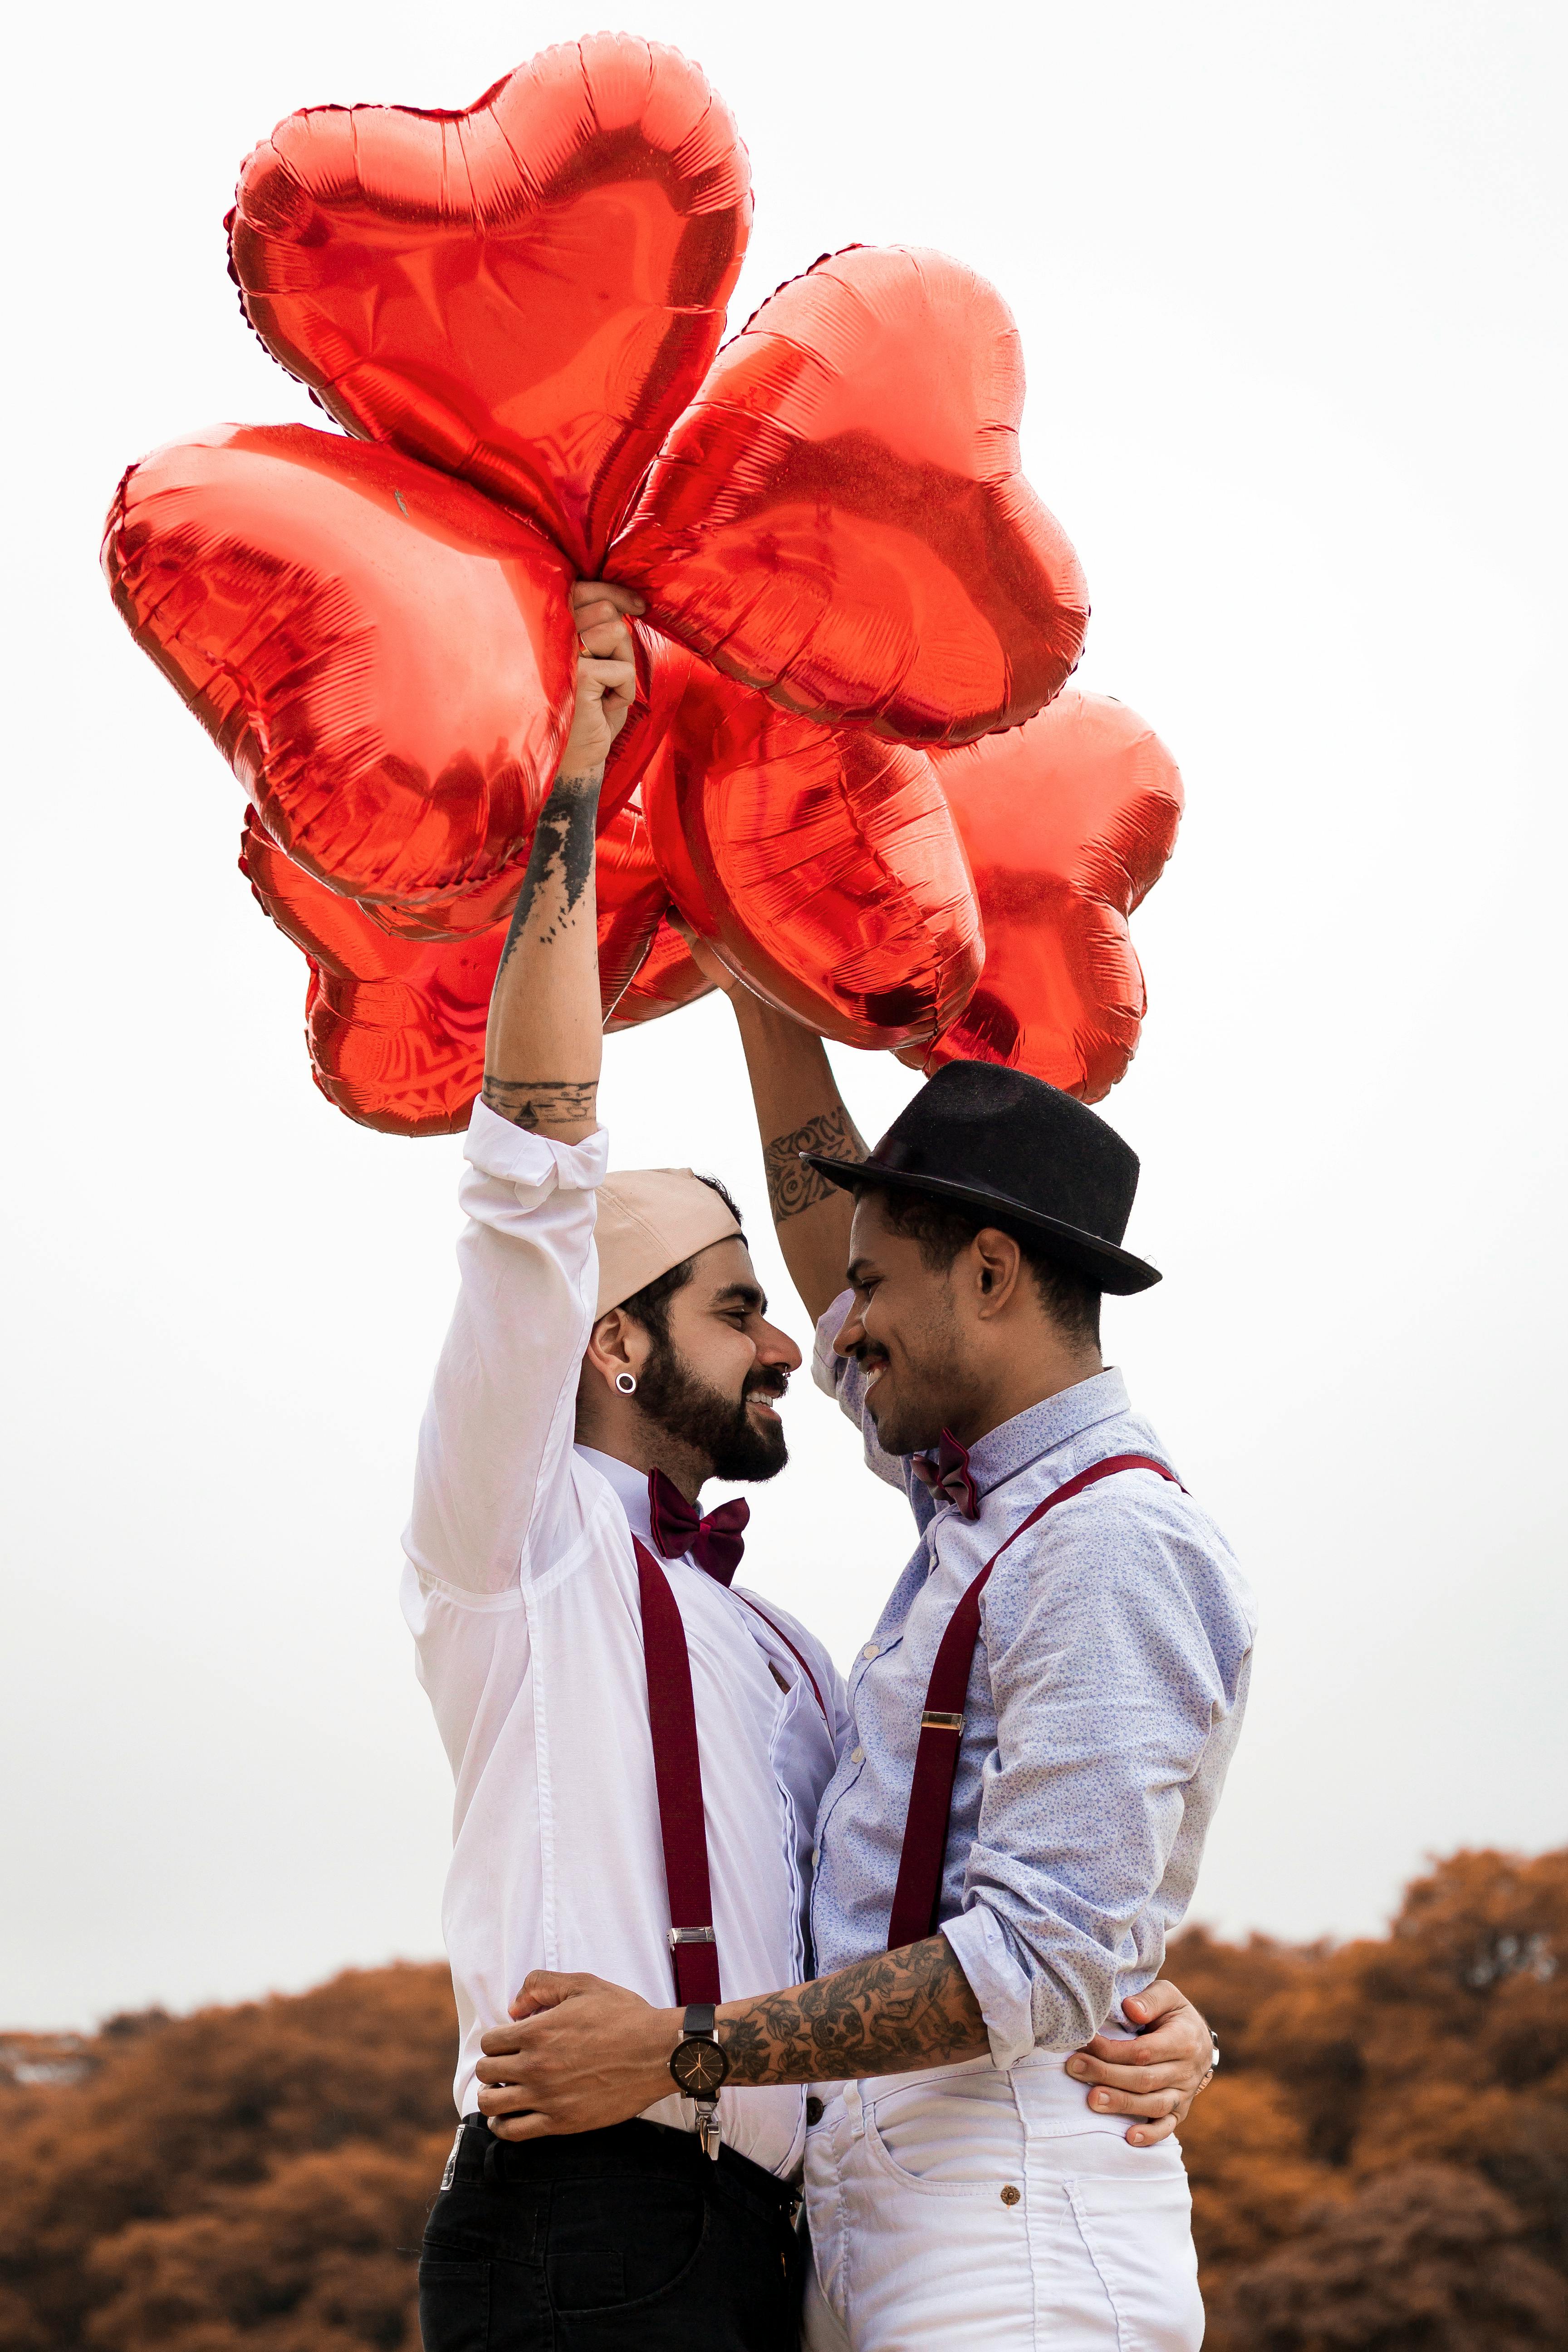 Deux hommes s'embrassent en tenant des ballons en forme de cœur | Source : Pexels